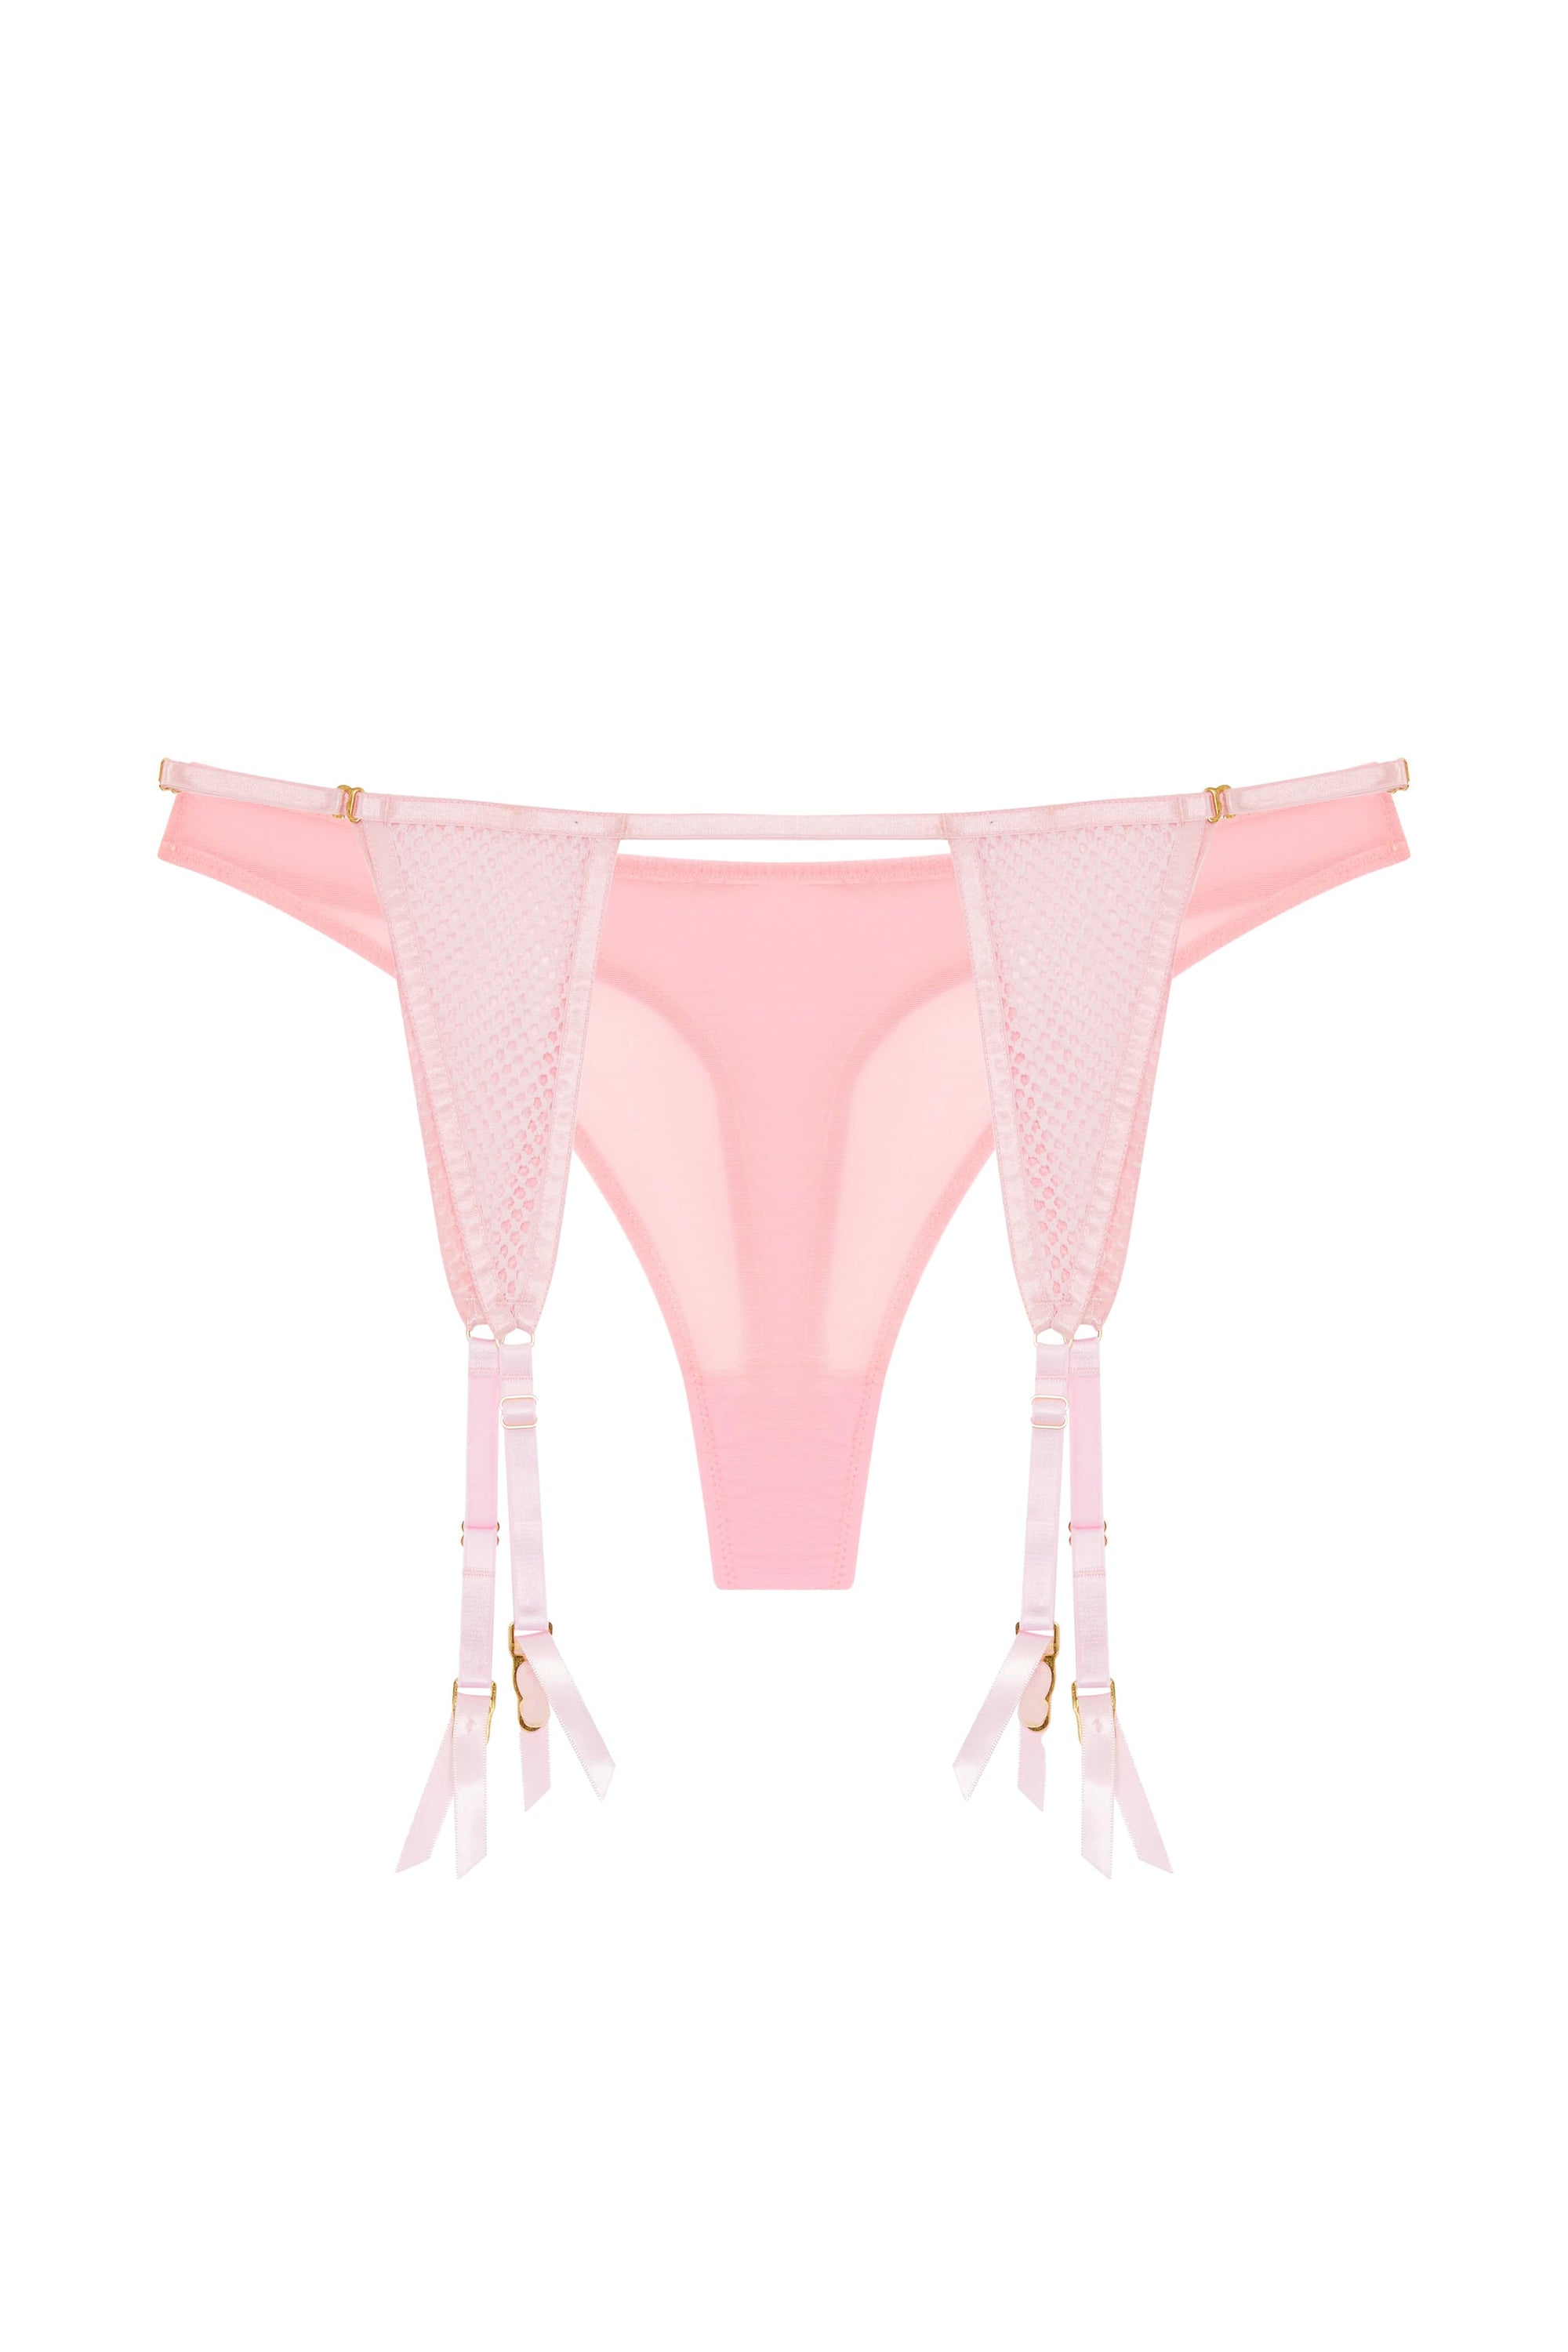 Greta Pink Fishnet Suspender Thong